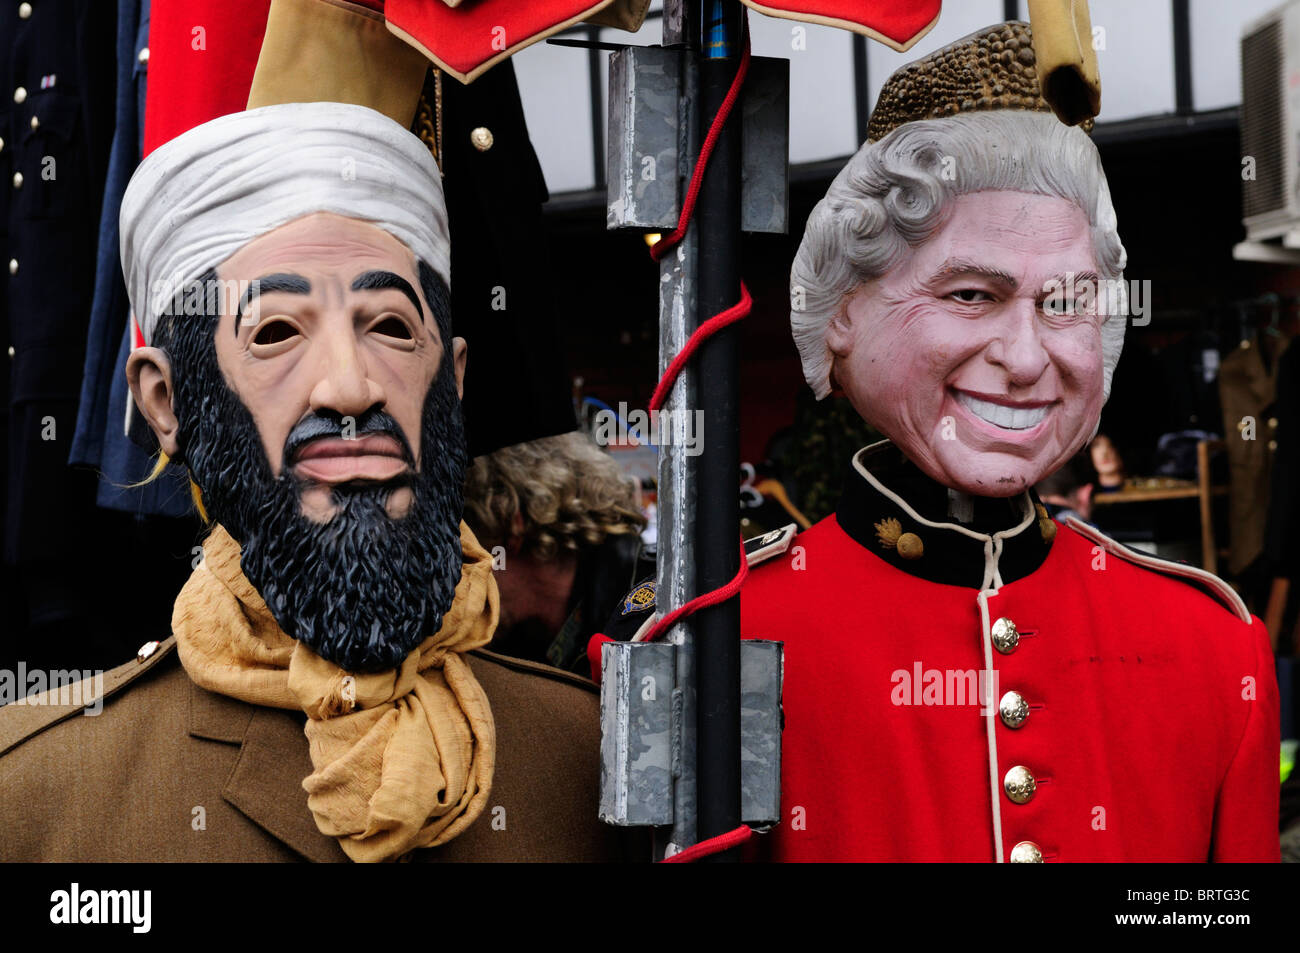 Schaufensterpuppen gekleidet wie Osama Bin Laden und die Königin auf einen Stall in Portobello Road Market, Notting Hill, London, England, Uk Stockfoto